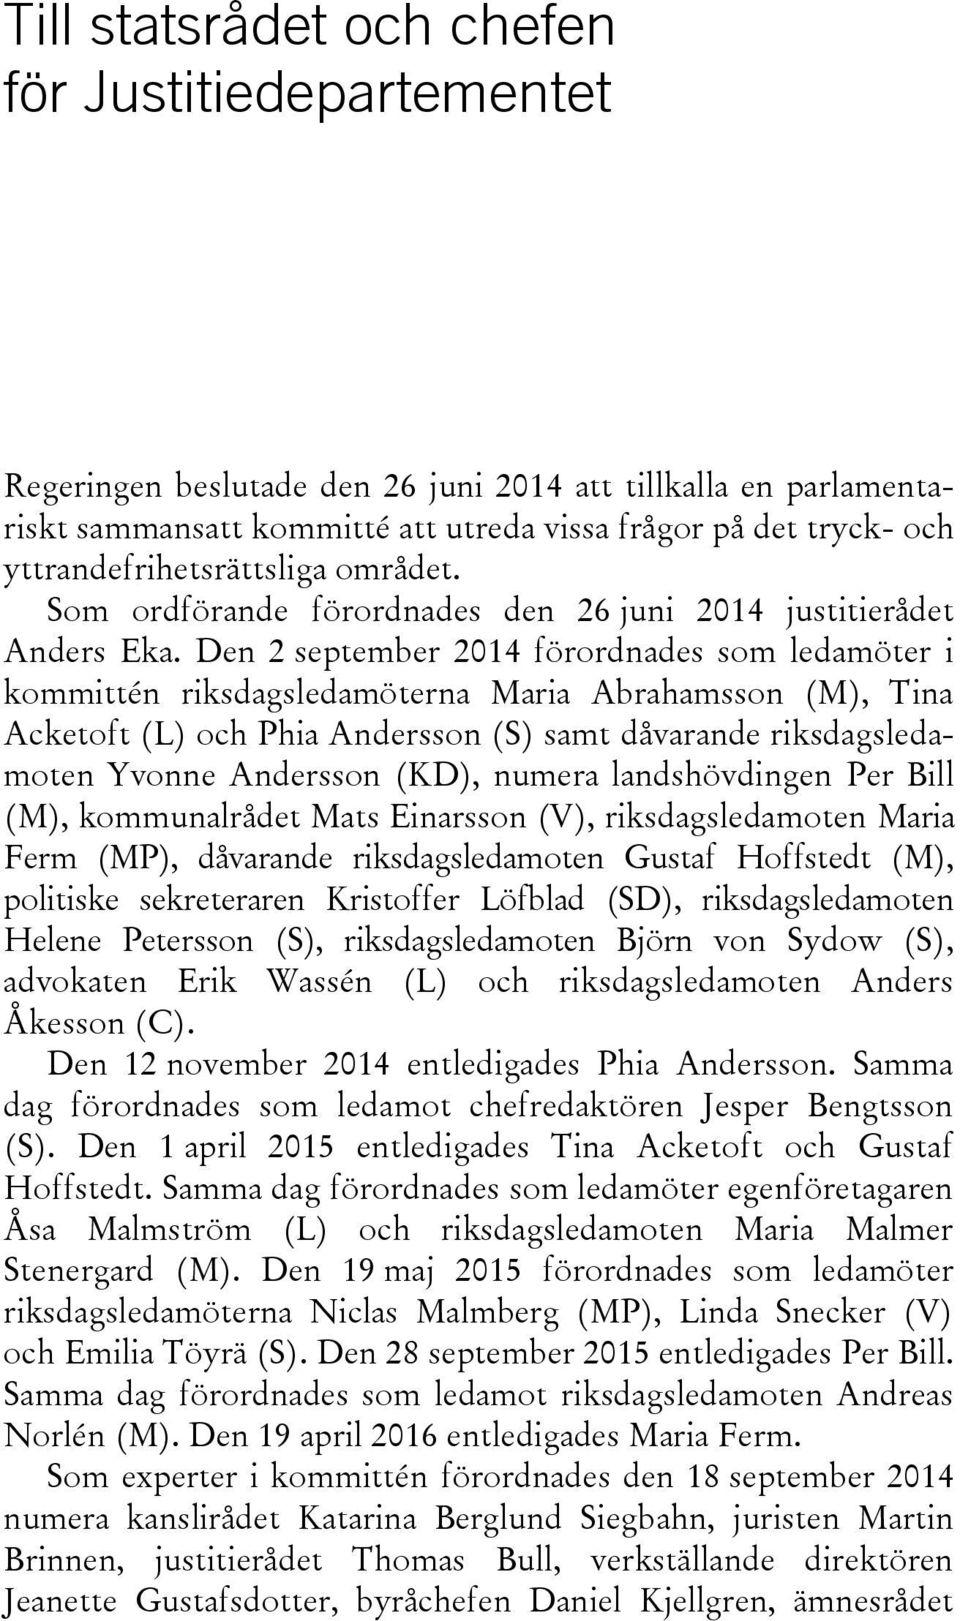 Den 2 september 2014 förordnades som ledamöter i kommittén riksdagsledamöterna Maria Abrahamsson (M), Tina Acketoft (L) och Phia Andersson (S) samt dåvarande riksdagsledamoten Yvonne Andersson (KD),